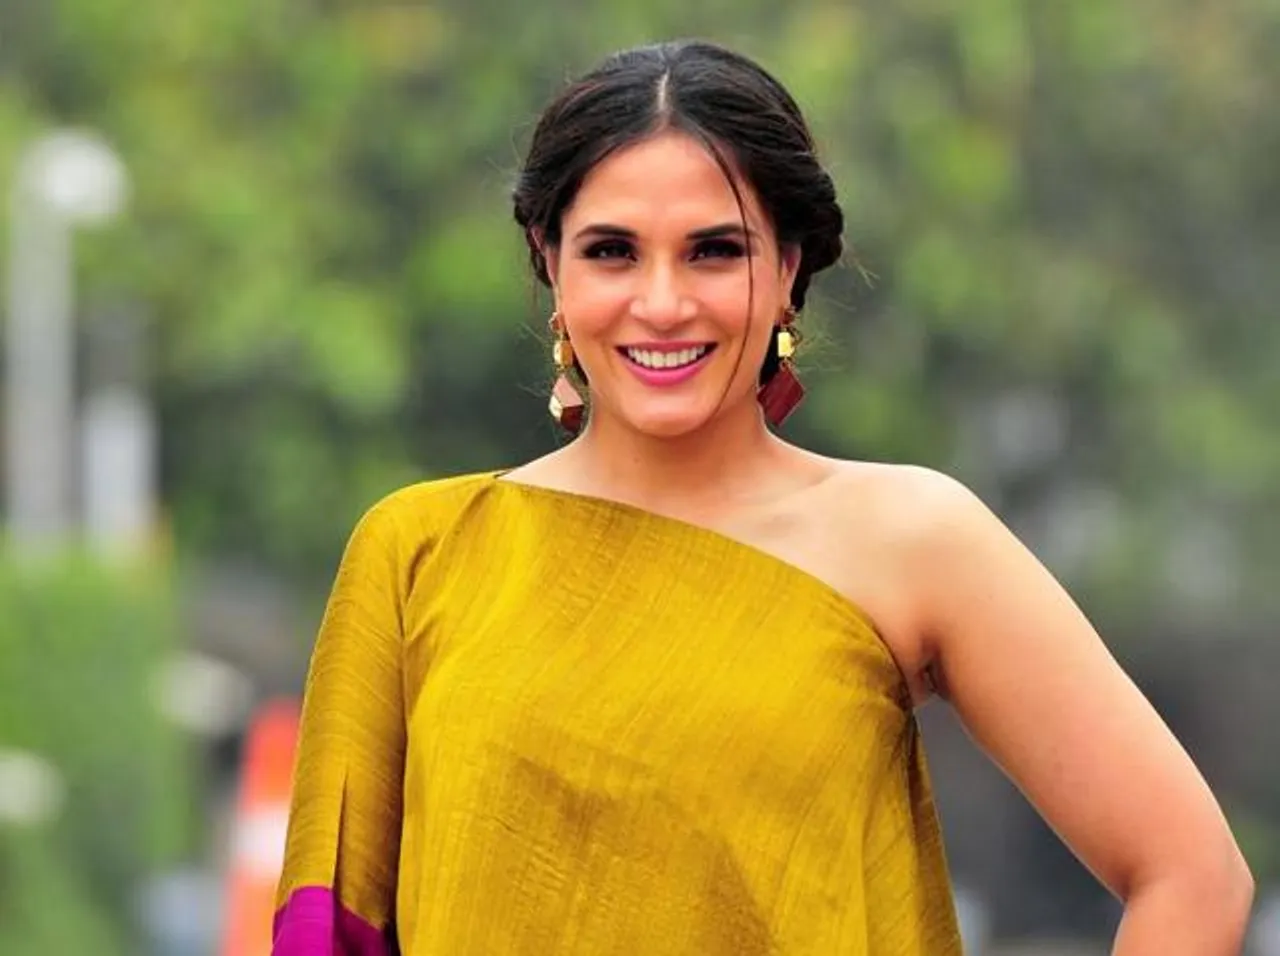 अभिनेत्री ऋचा चड्ढा इंडियन फिल्म फेस्टिवल ऑफ मेलबर्न के शॉर्ट फिल्म सेक्शन की आधिकारिक ज्यूरी बनी